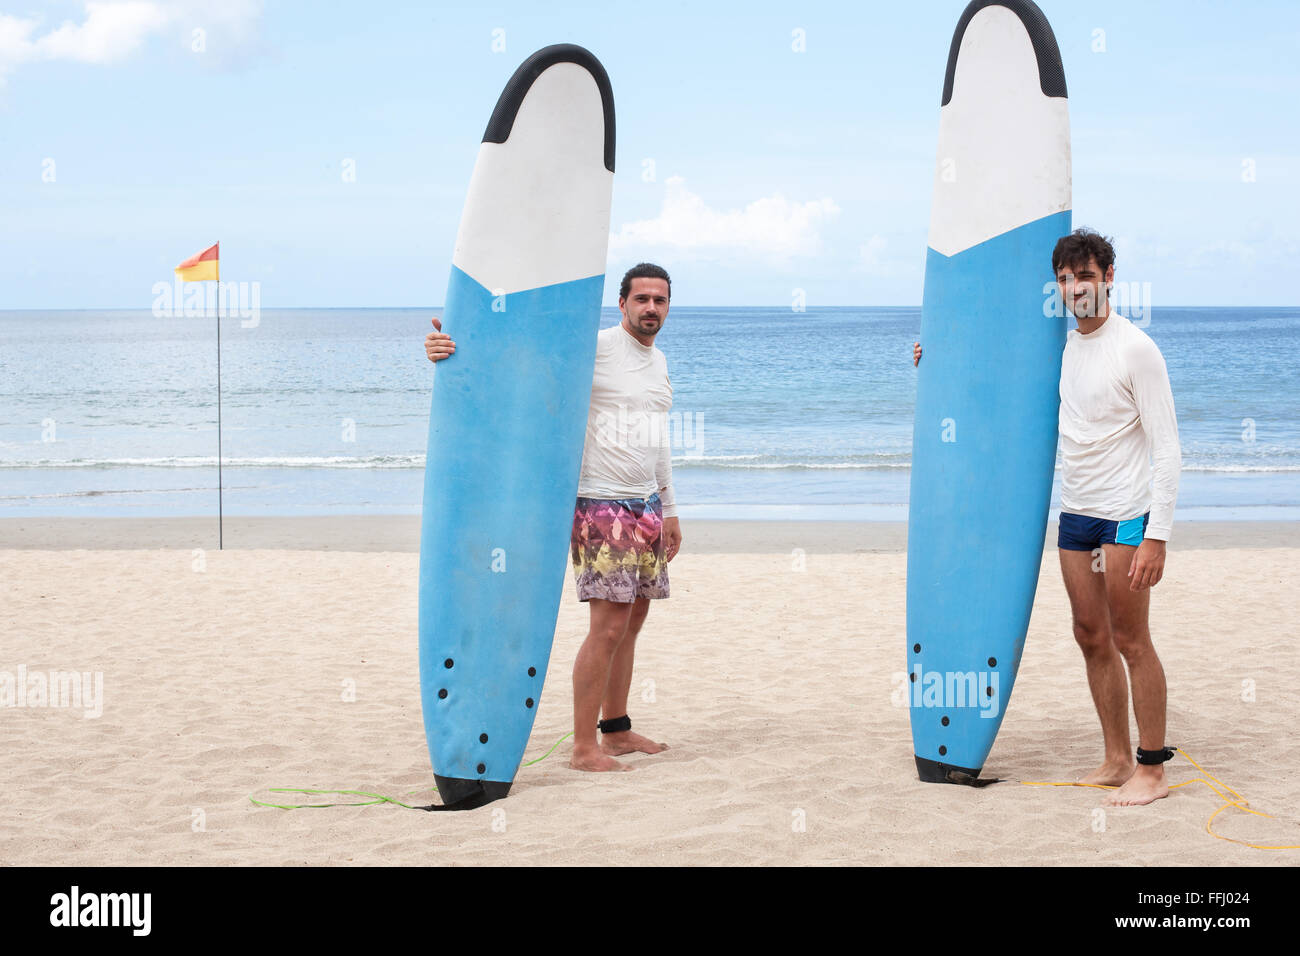 Due surfisti comunicante sulla spiaggia. Immagine di stock. Foto Stock